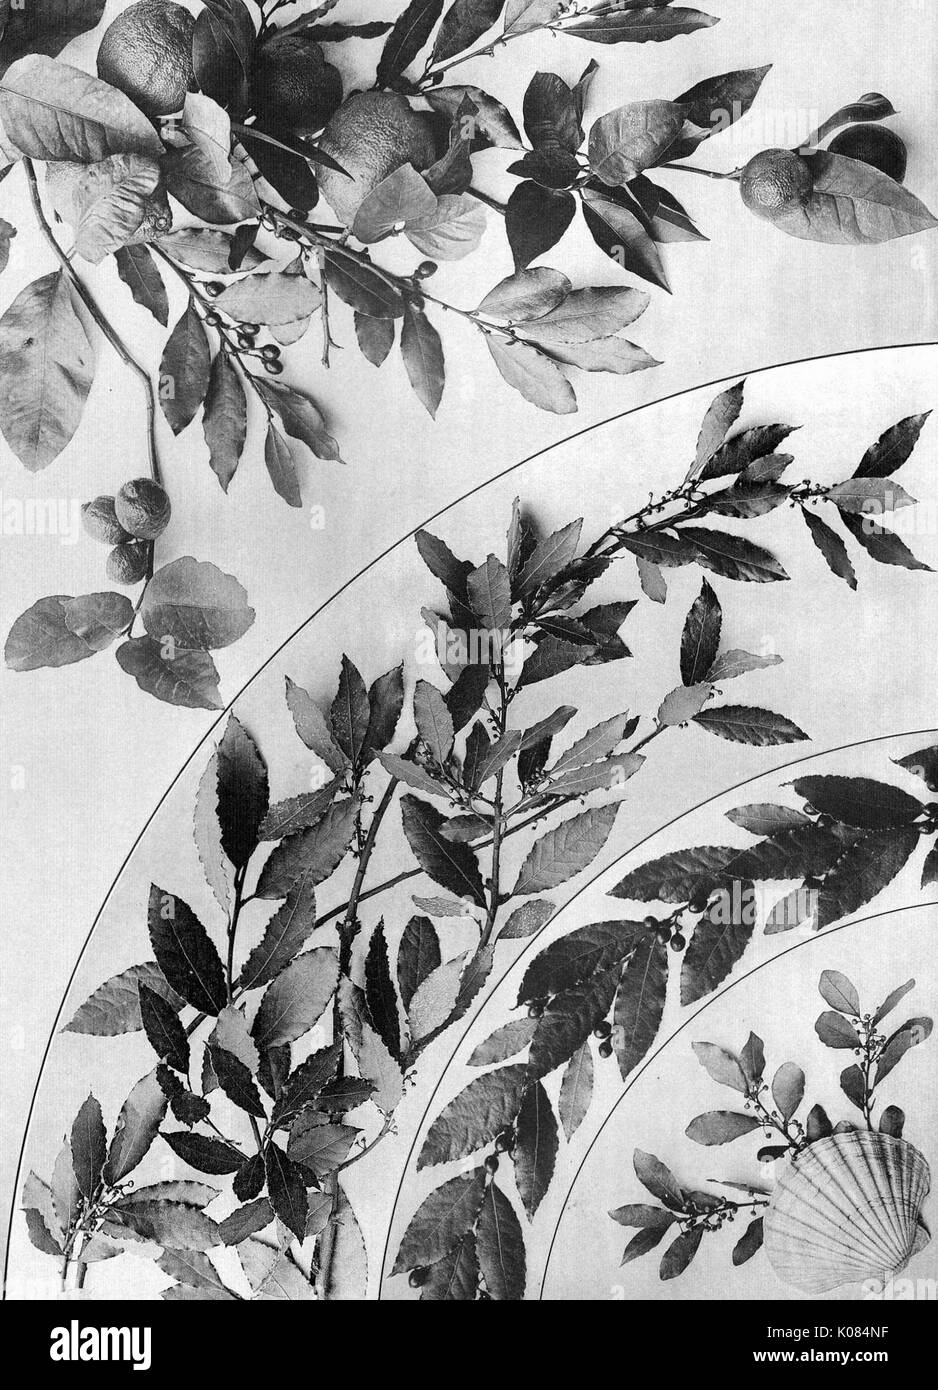 Festoni e gruppi decorativi da Martin Gerlach, array di foglie con piccoli frutti di bosco, conchiglia di mare nell'angolo inferiore destro, 1900. Foto Stock